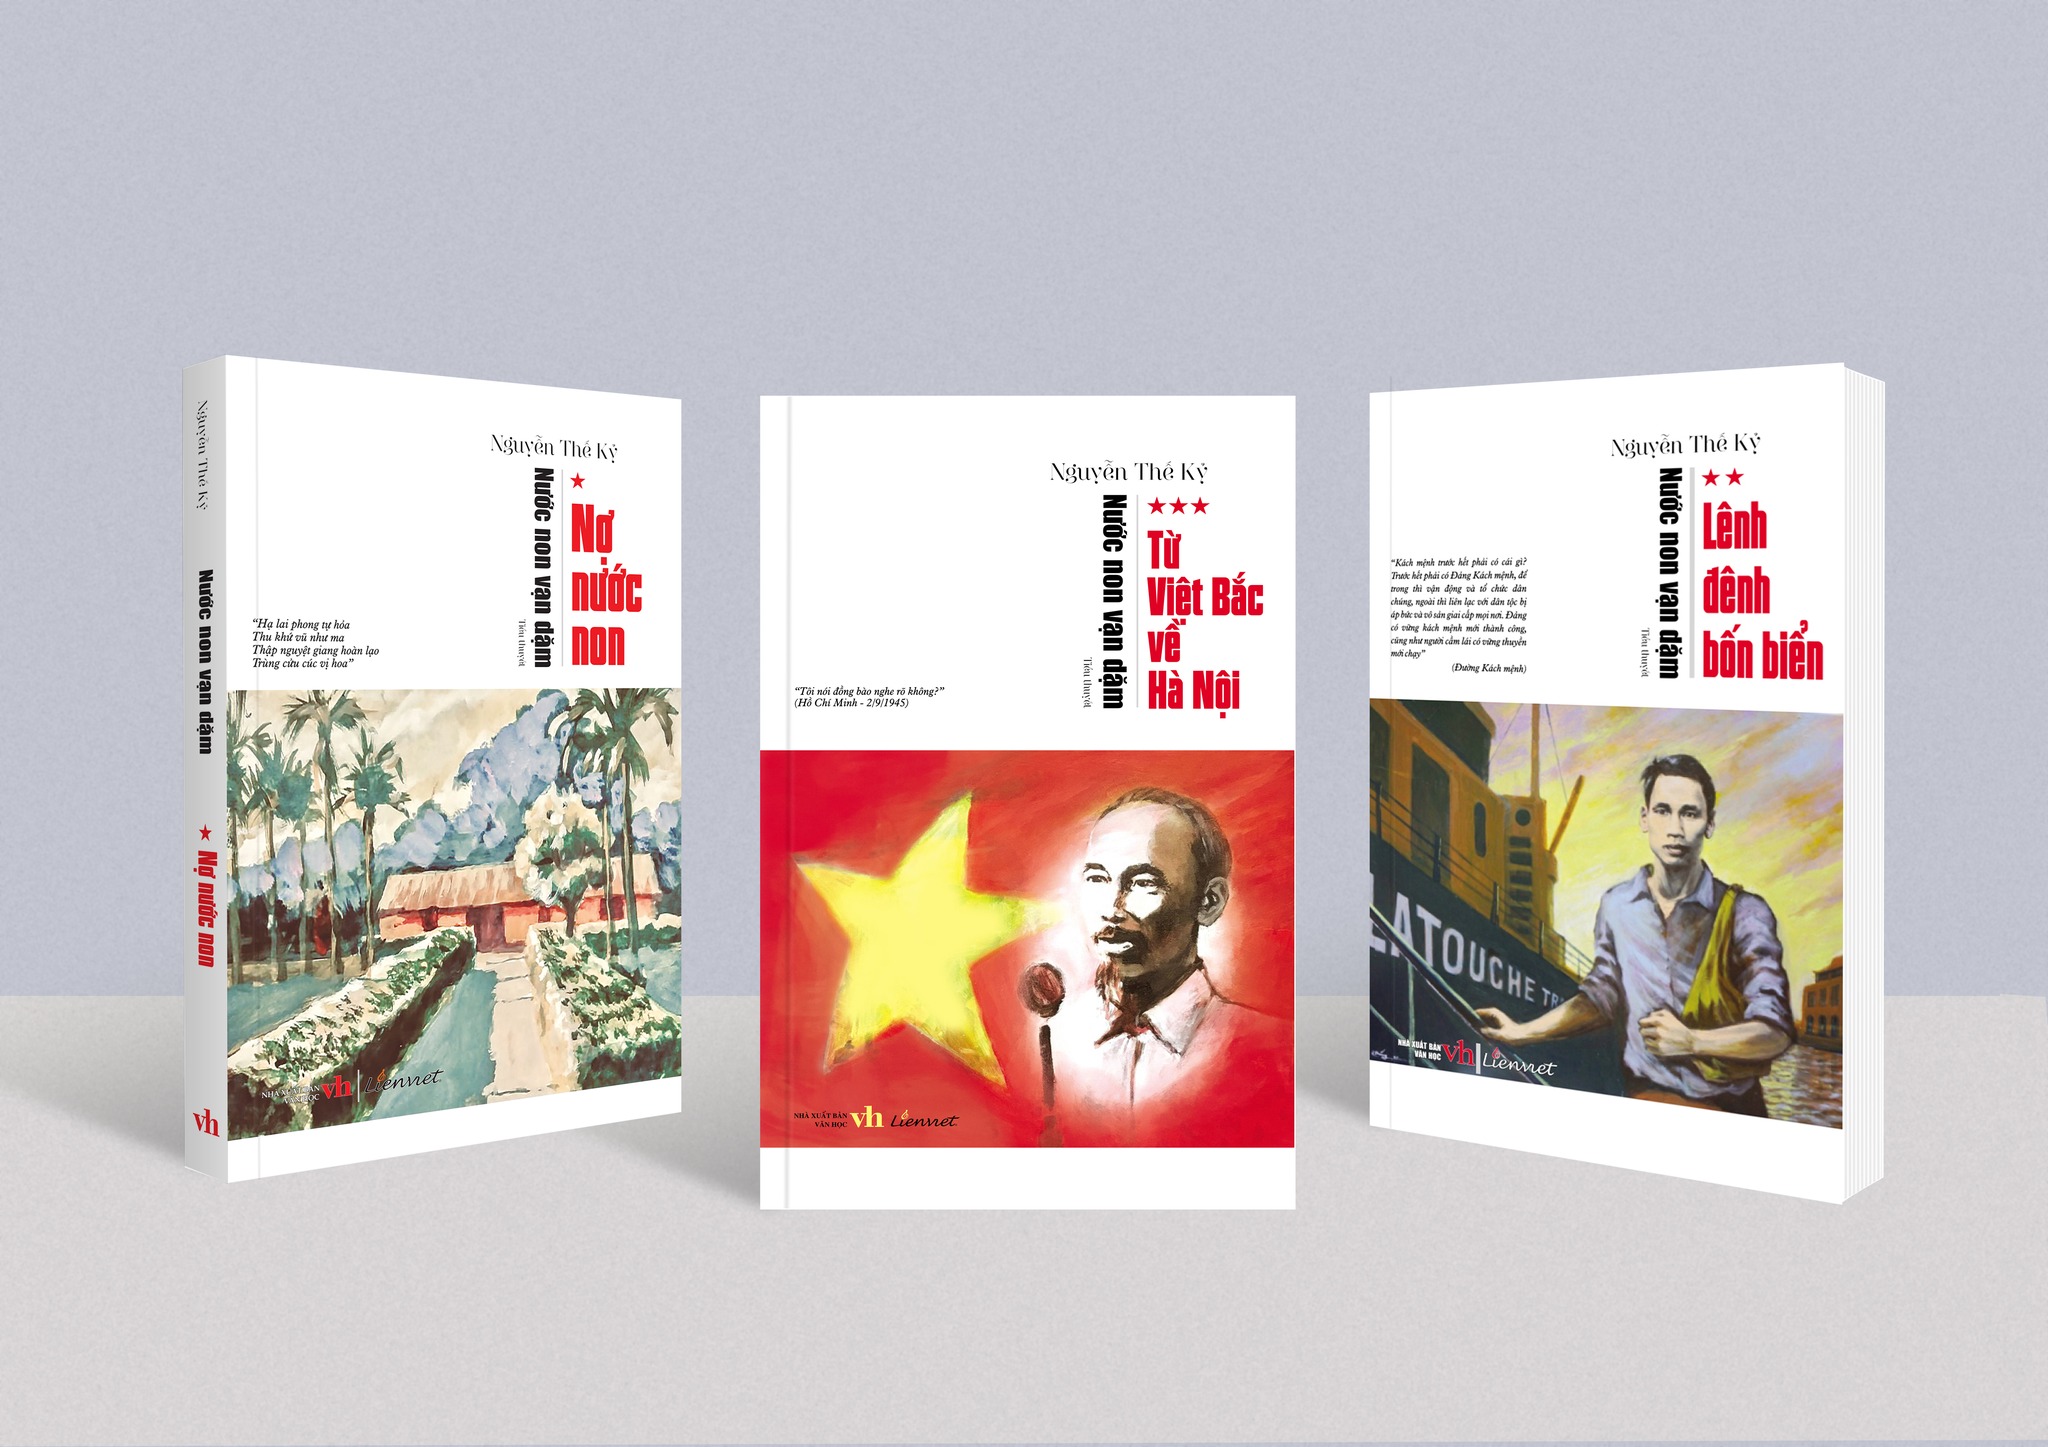 Ra mắt sách “Từ Việt Bắc về Hà Nội” của nhà văn Nguyễn Thế Kỷ - 1